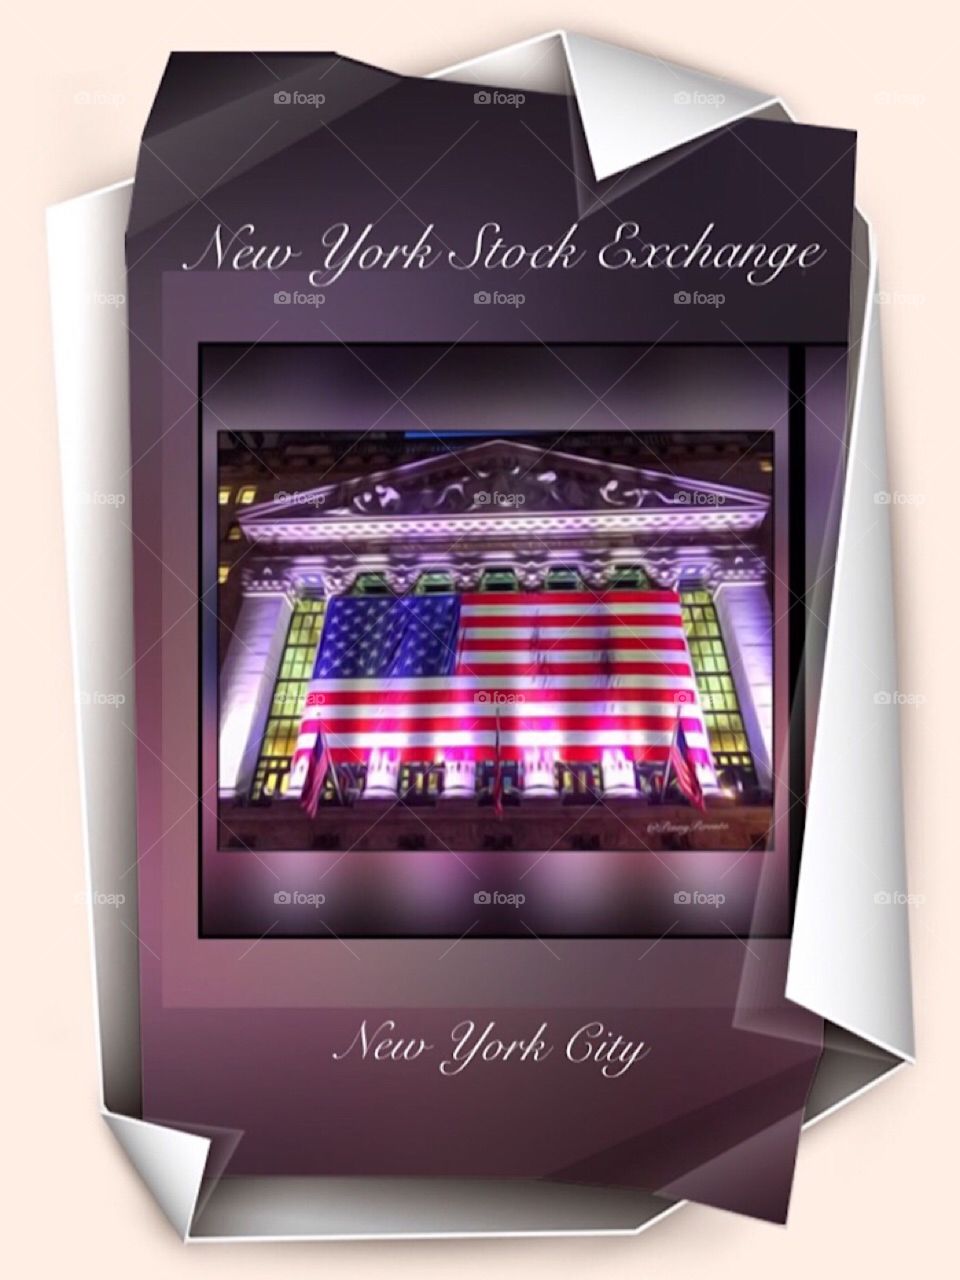 New York Stock Exchange, New York City 